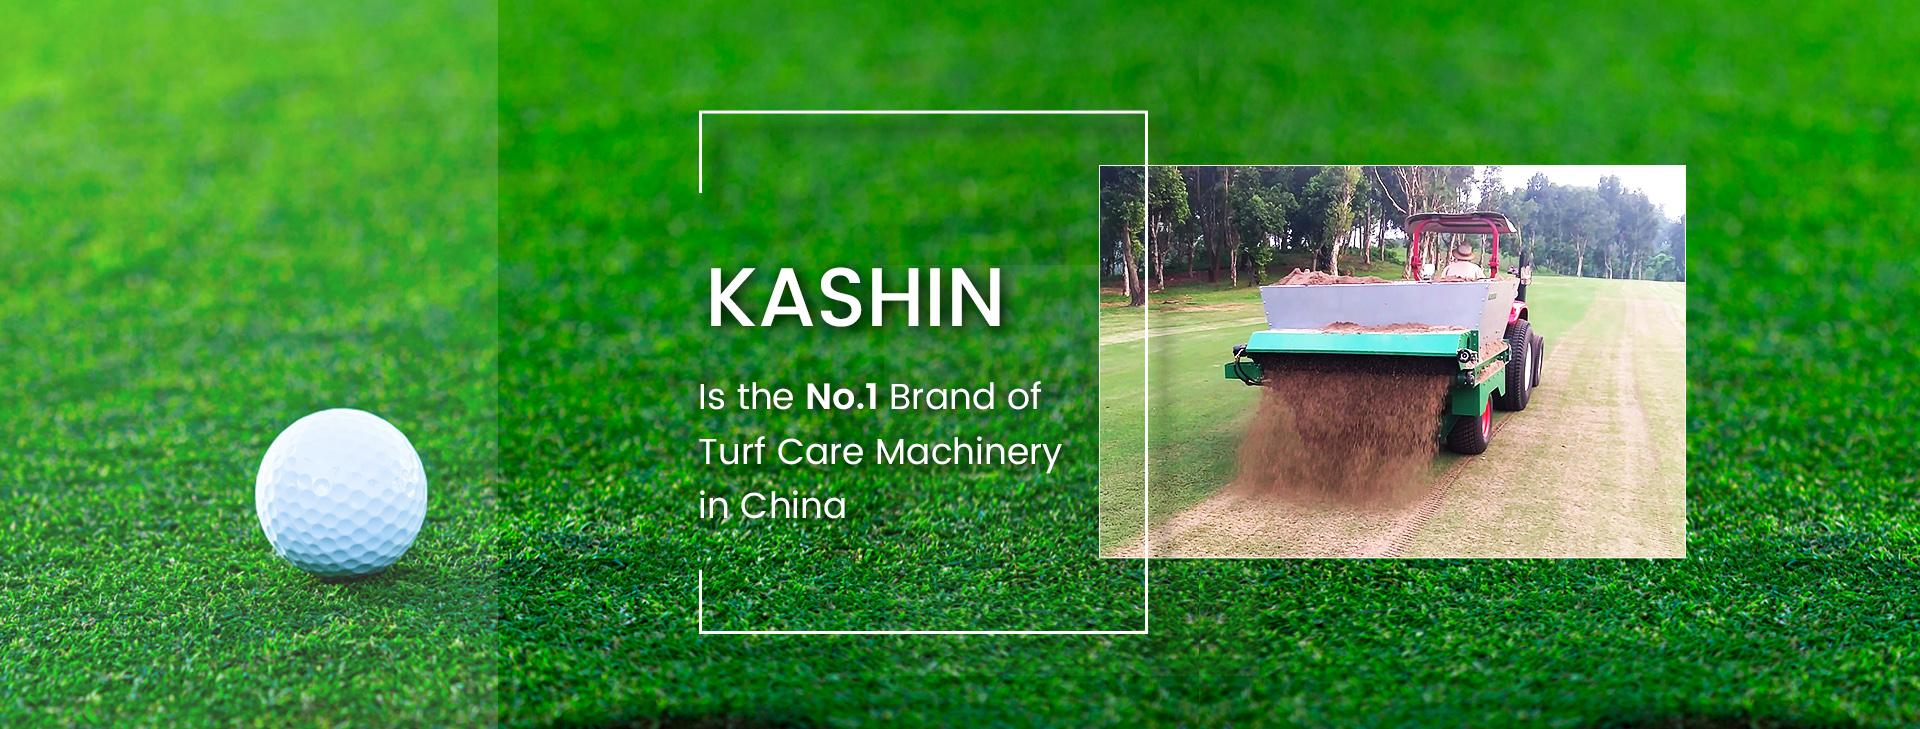 KASHIN, Çin'deki 1 Numaralı Çim Bakım Makineleri Markasıdır